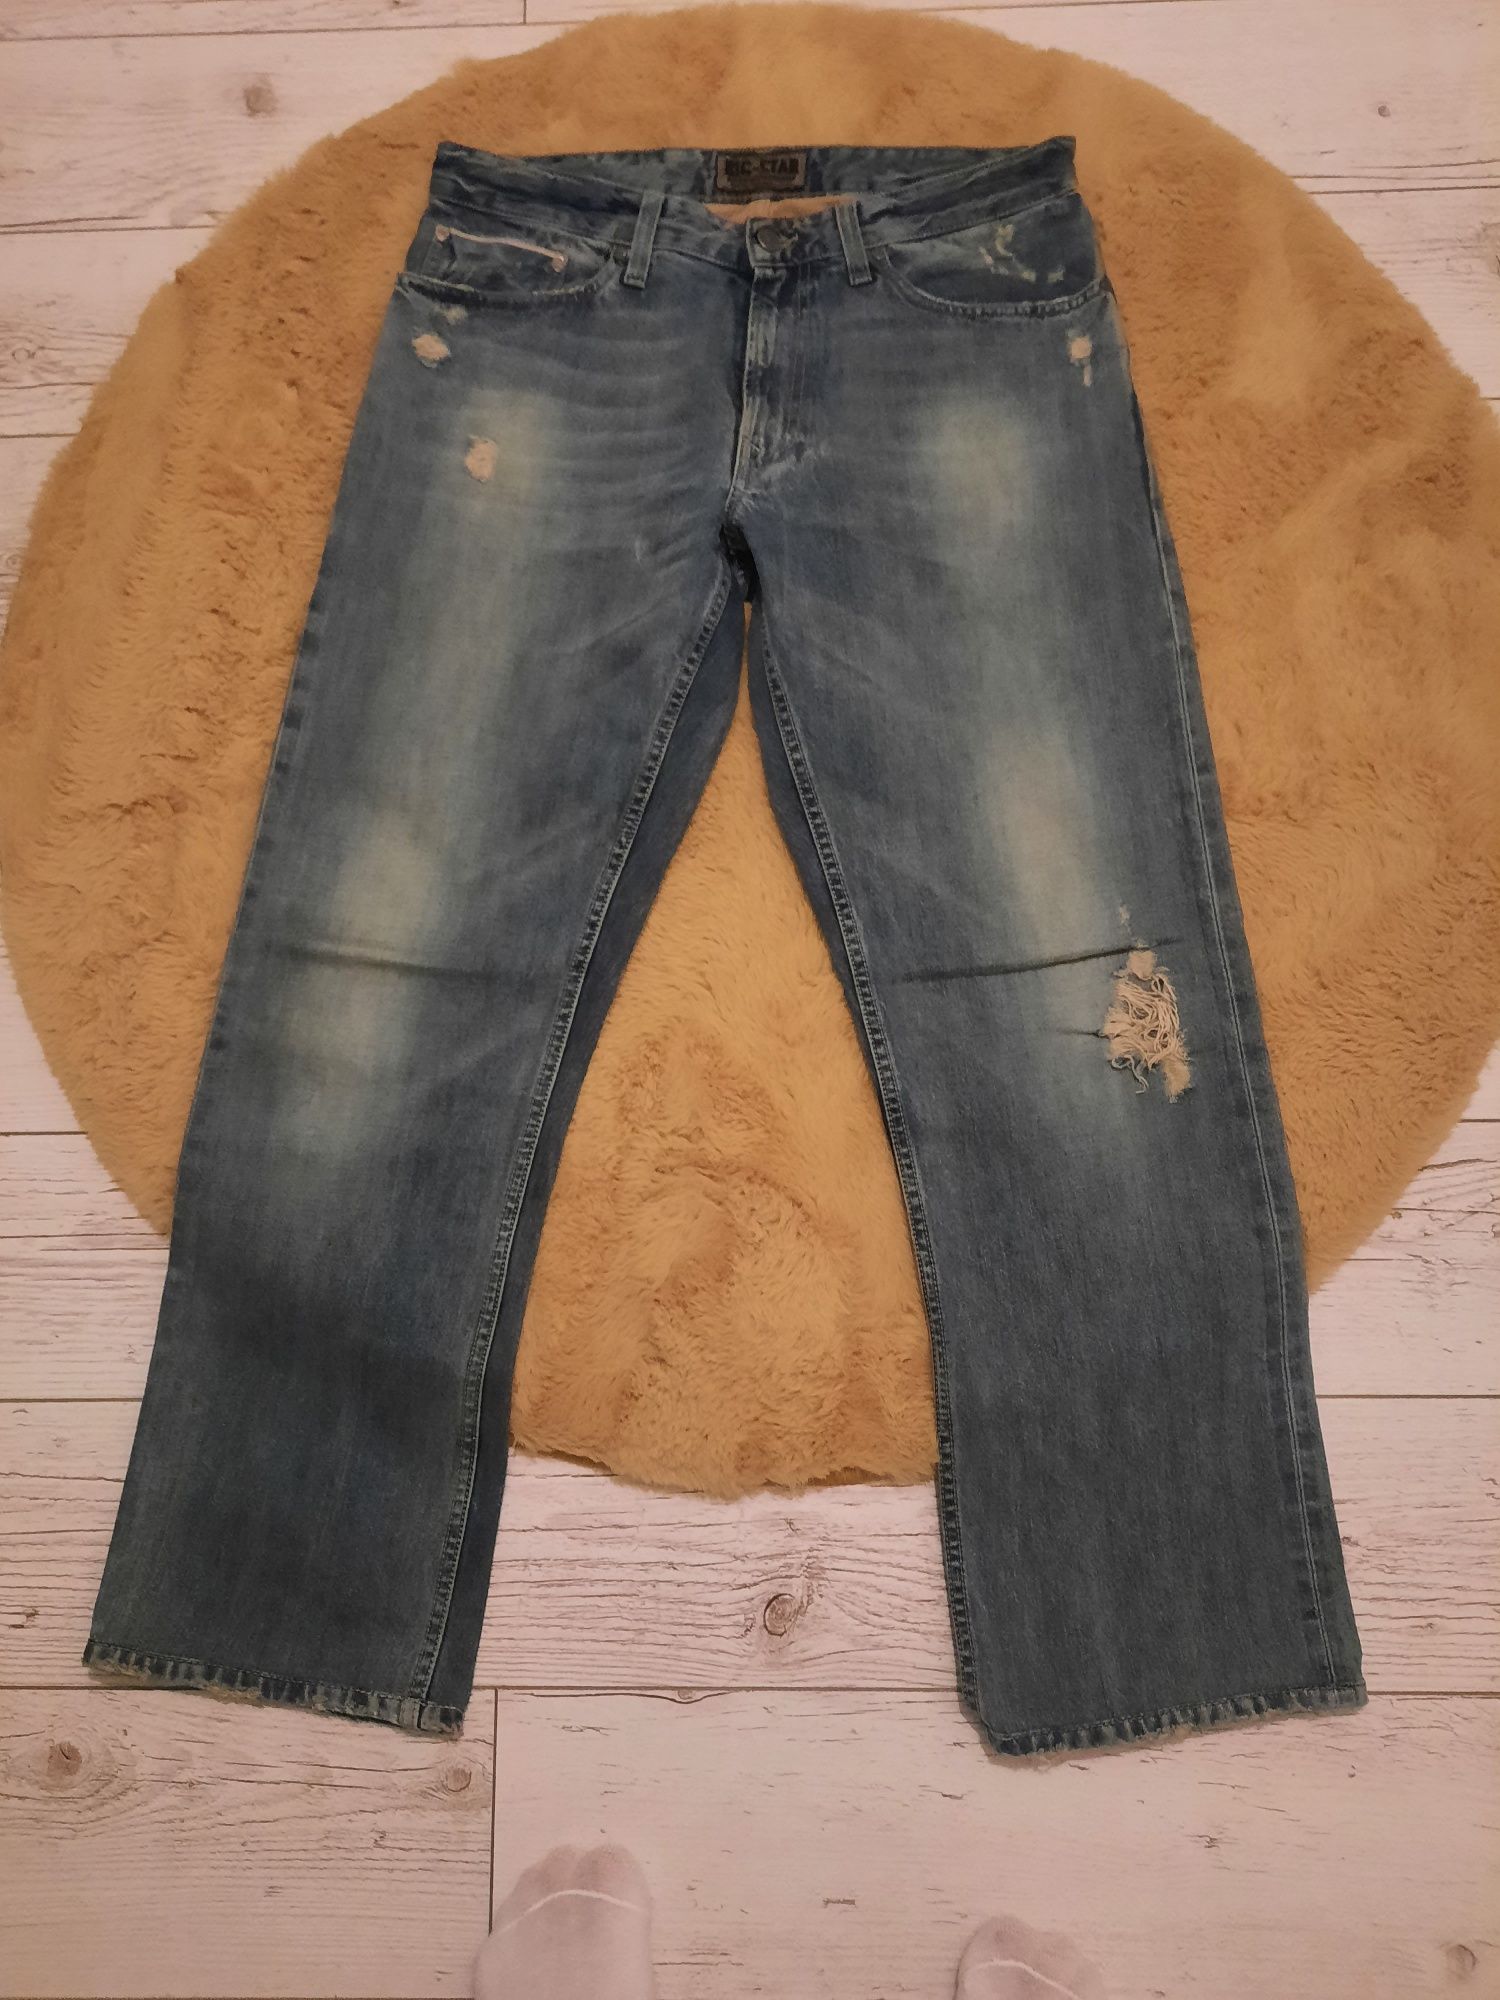 Spodnie jeansowe Big Star rozmiar 33 dlugosc 34